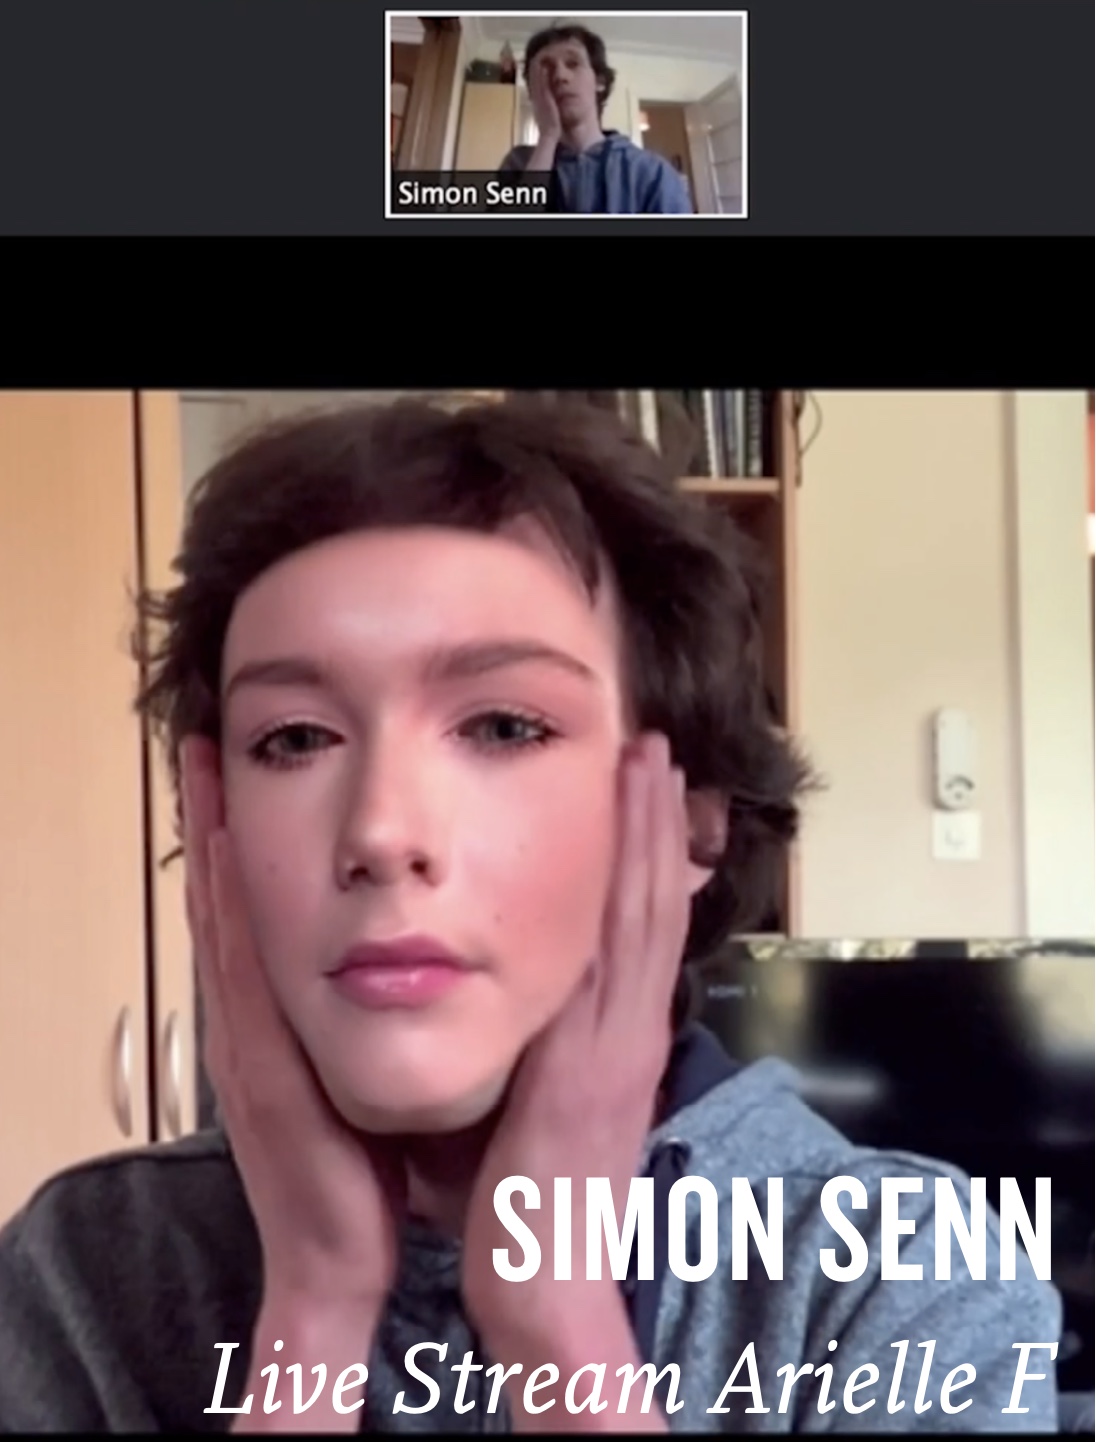 Live stream Arielle F by Simon Senn